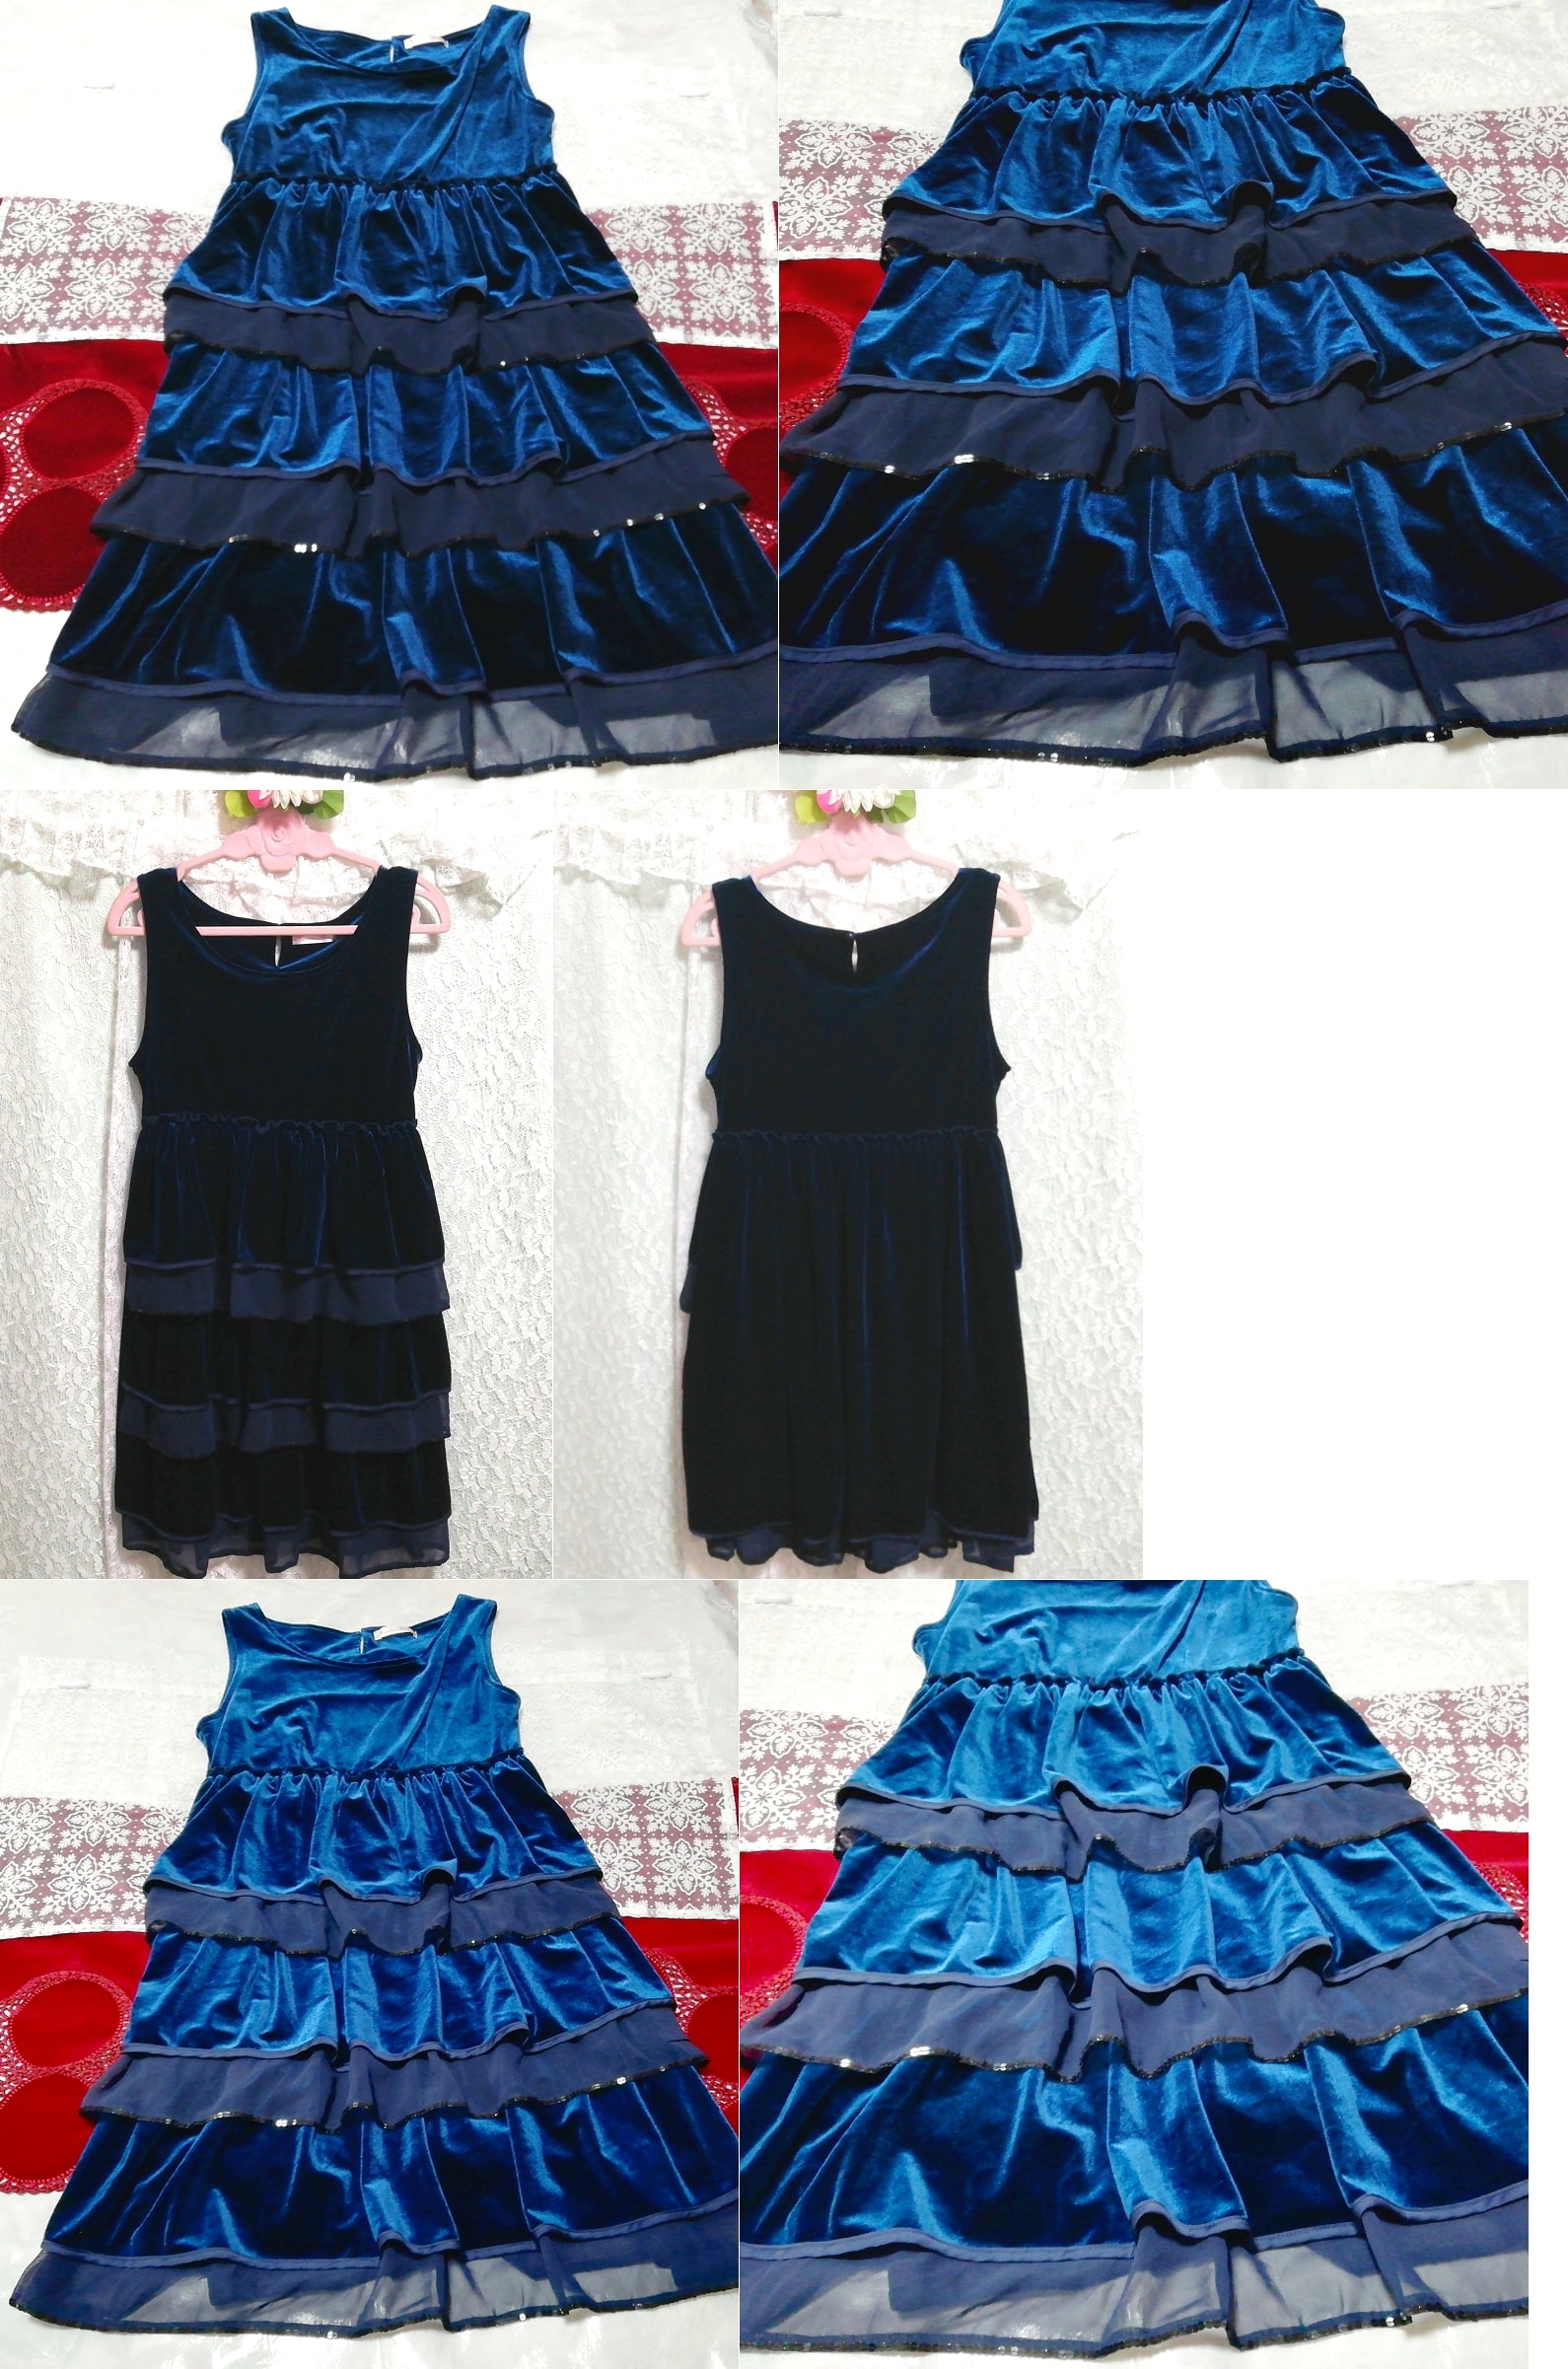 蓝色丝绒喇叭形睡衣无袖连体连衣裙, 时尚, 女士时装, 睡衣